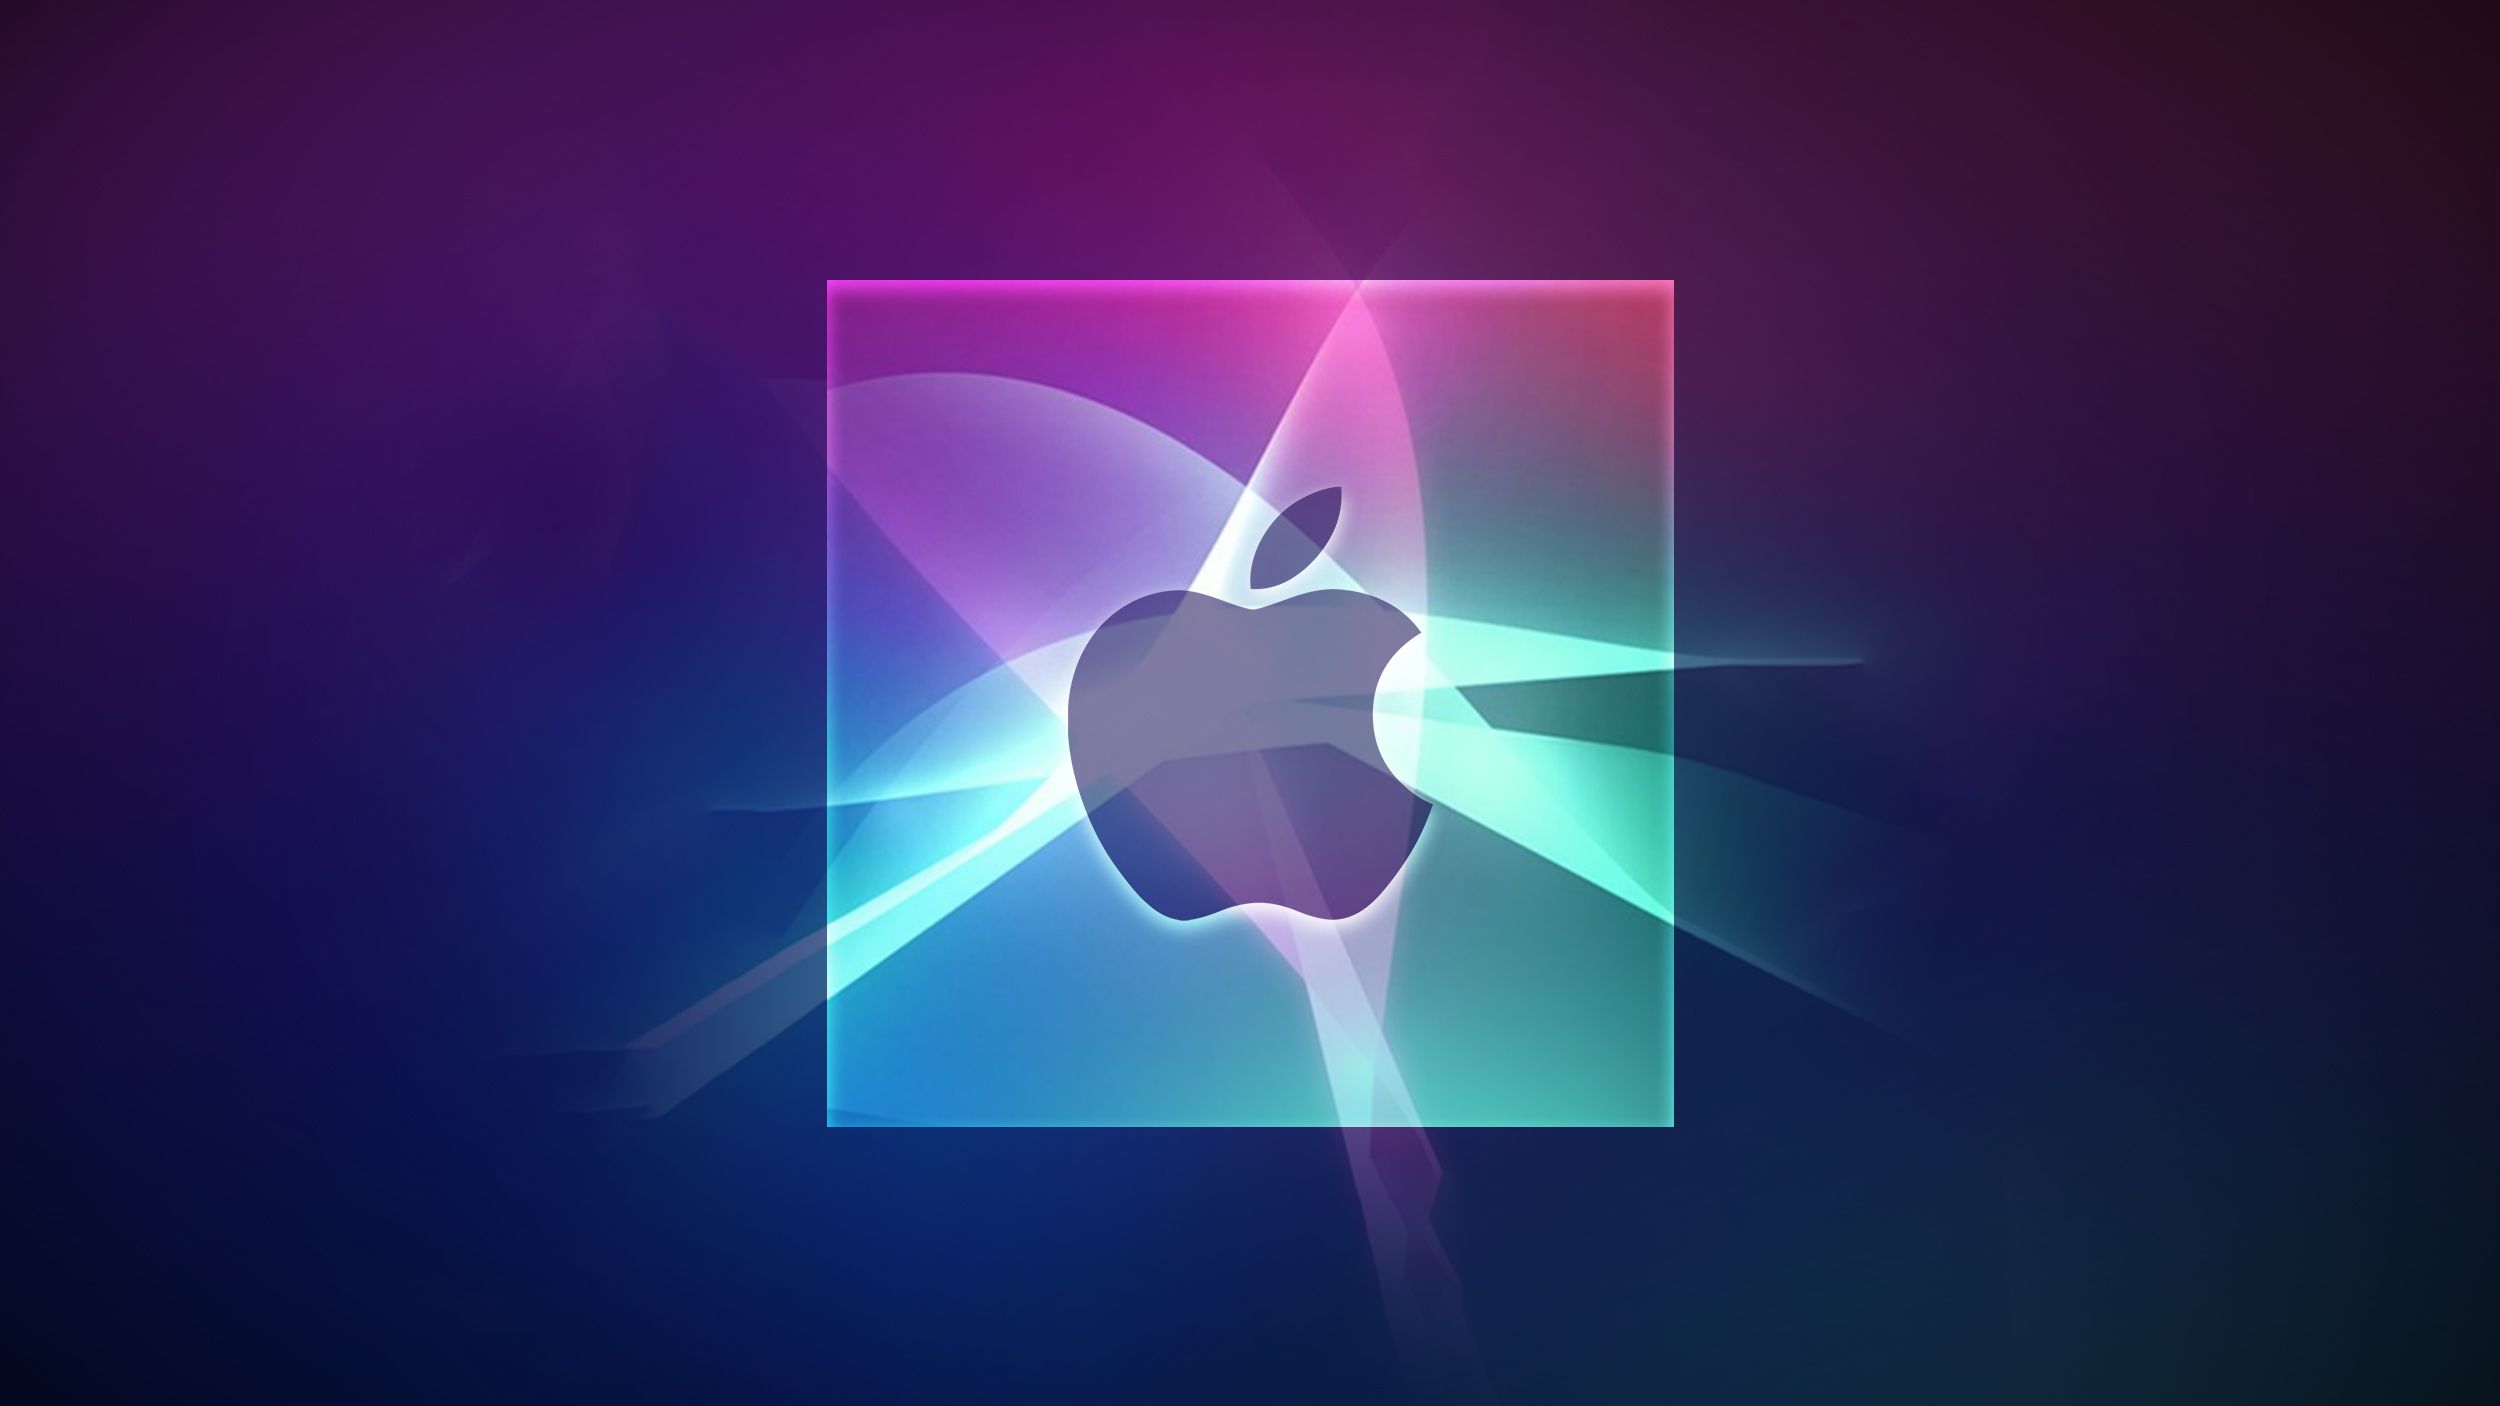 Imagem com um chip, logotipo da Apple e núcleos da Siri (inteligência artificial e servidores)